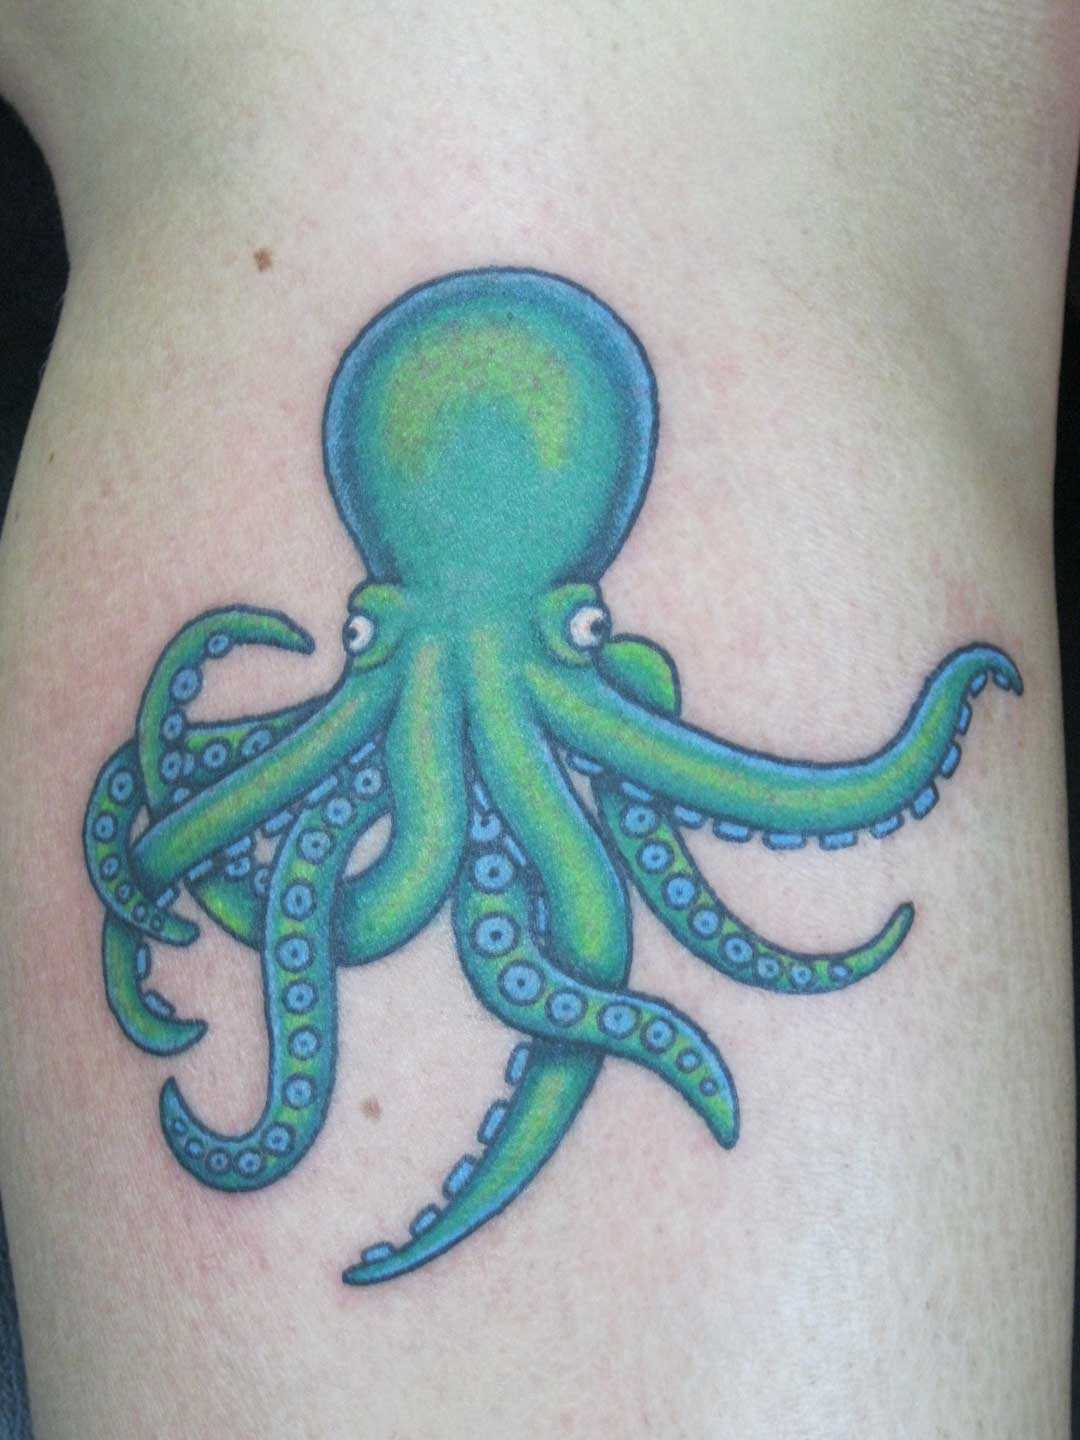 Tatuagem na perna da menina - verde polvo